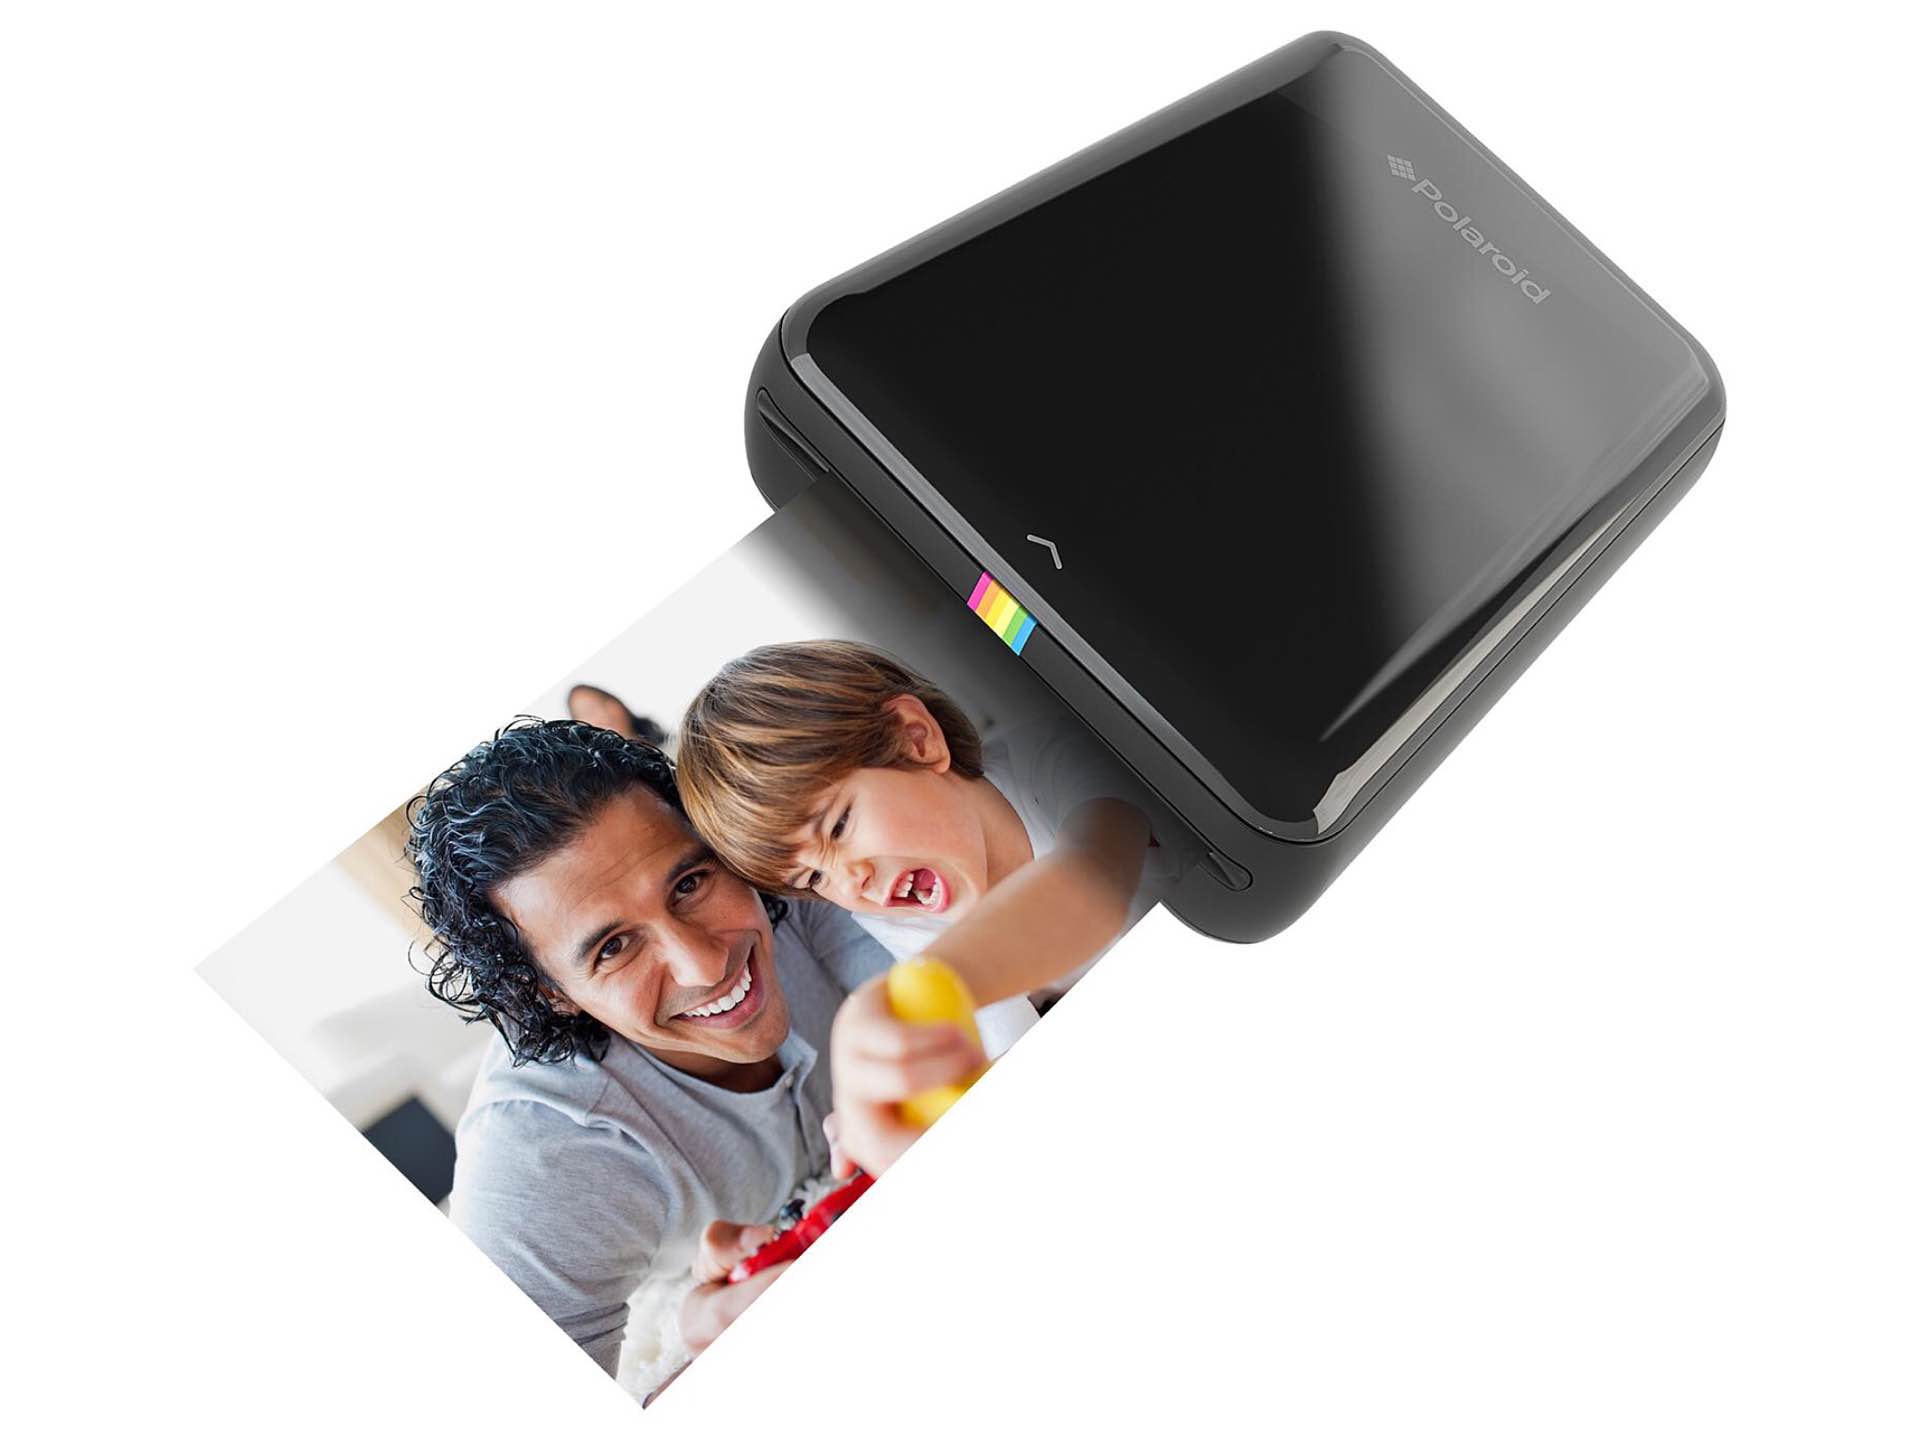 The Polaroid ZIP mobile printer. ($114)